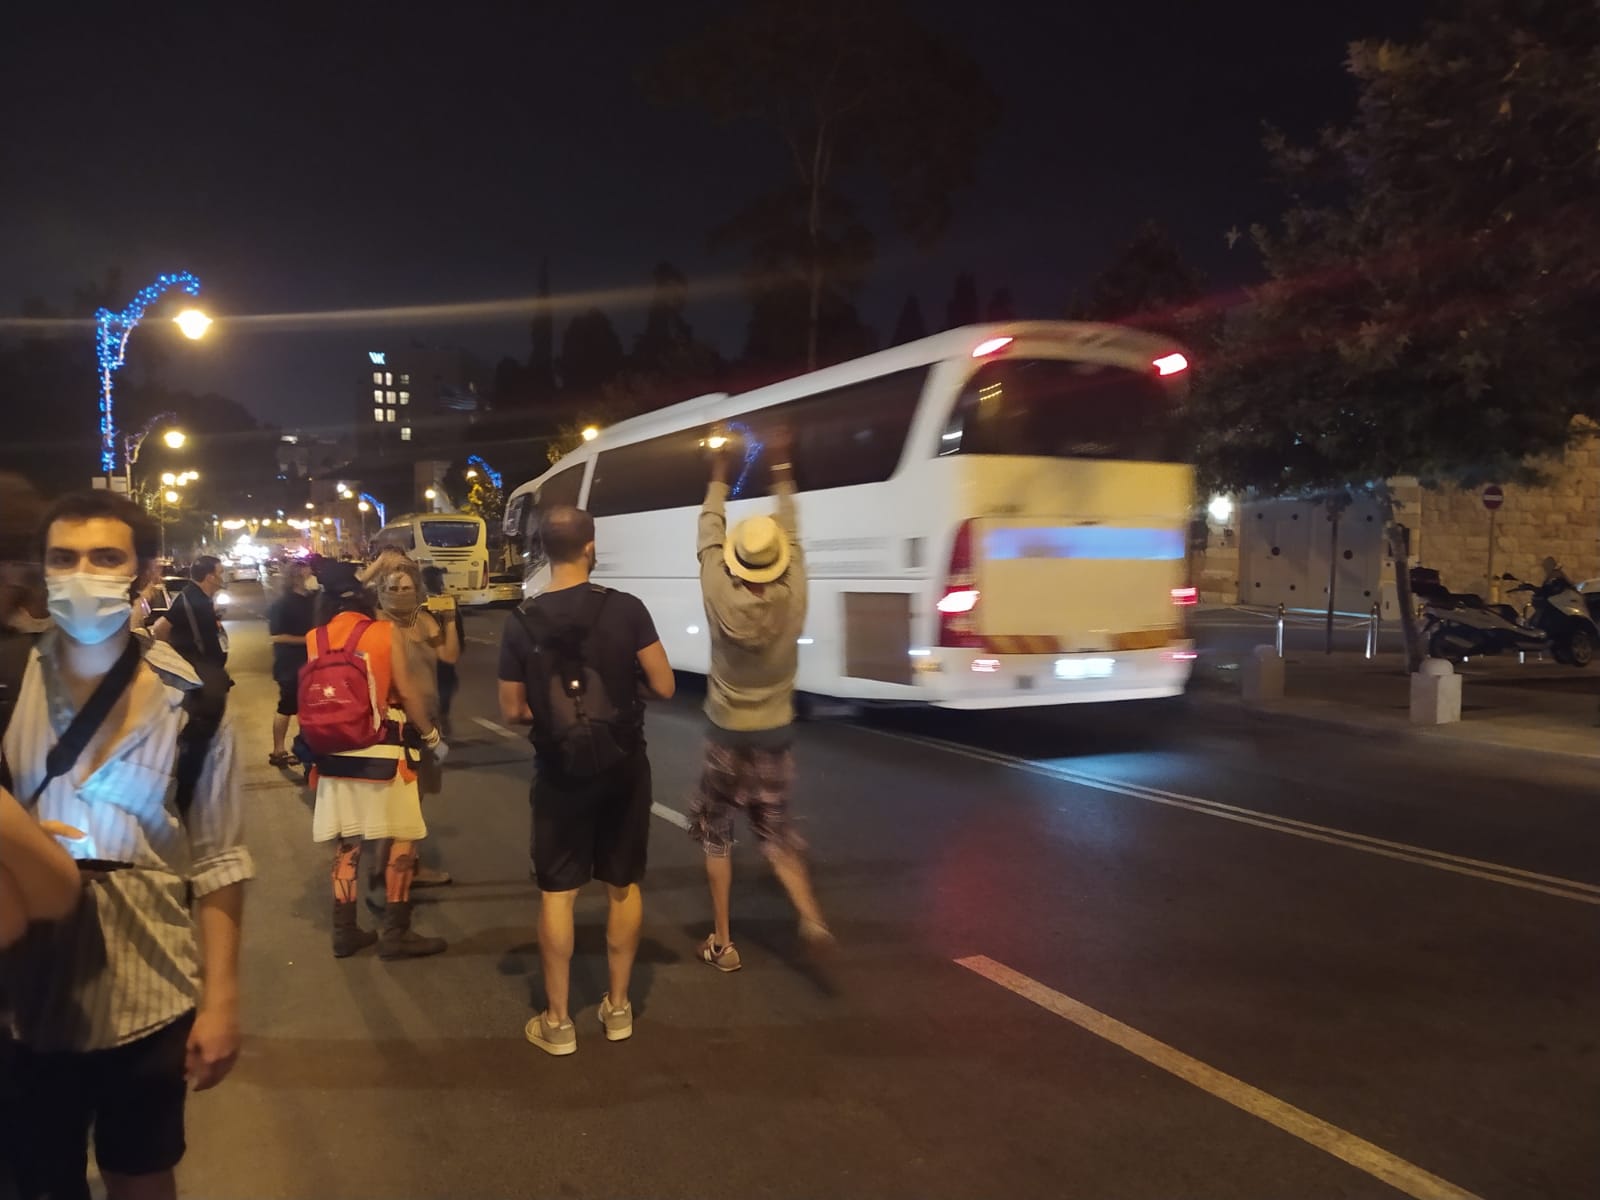 מפגינים לצד אוטובוסים עם עצורים יוצאים ממתחם ההפגנות מול מעון ראש הממשלה, 23 באוגוסט 2020 (צילום: יהל פרג')